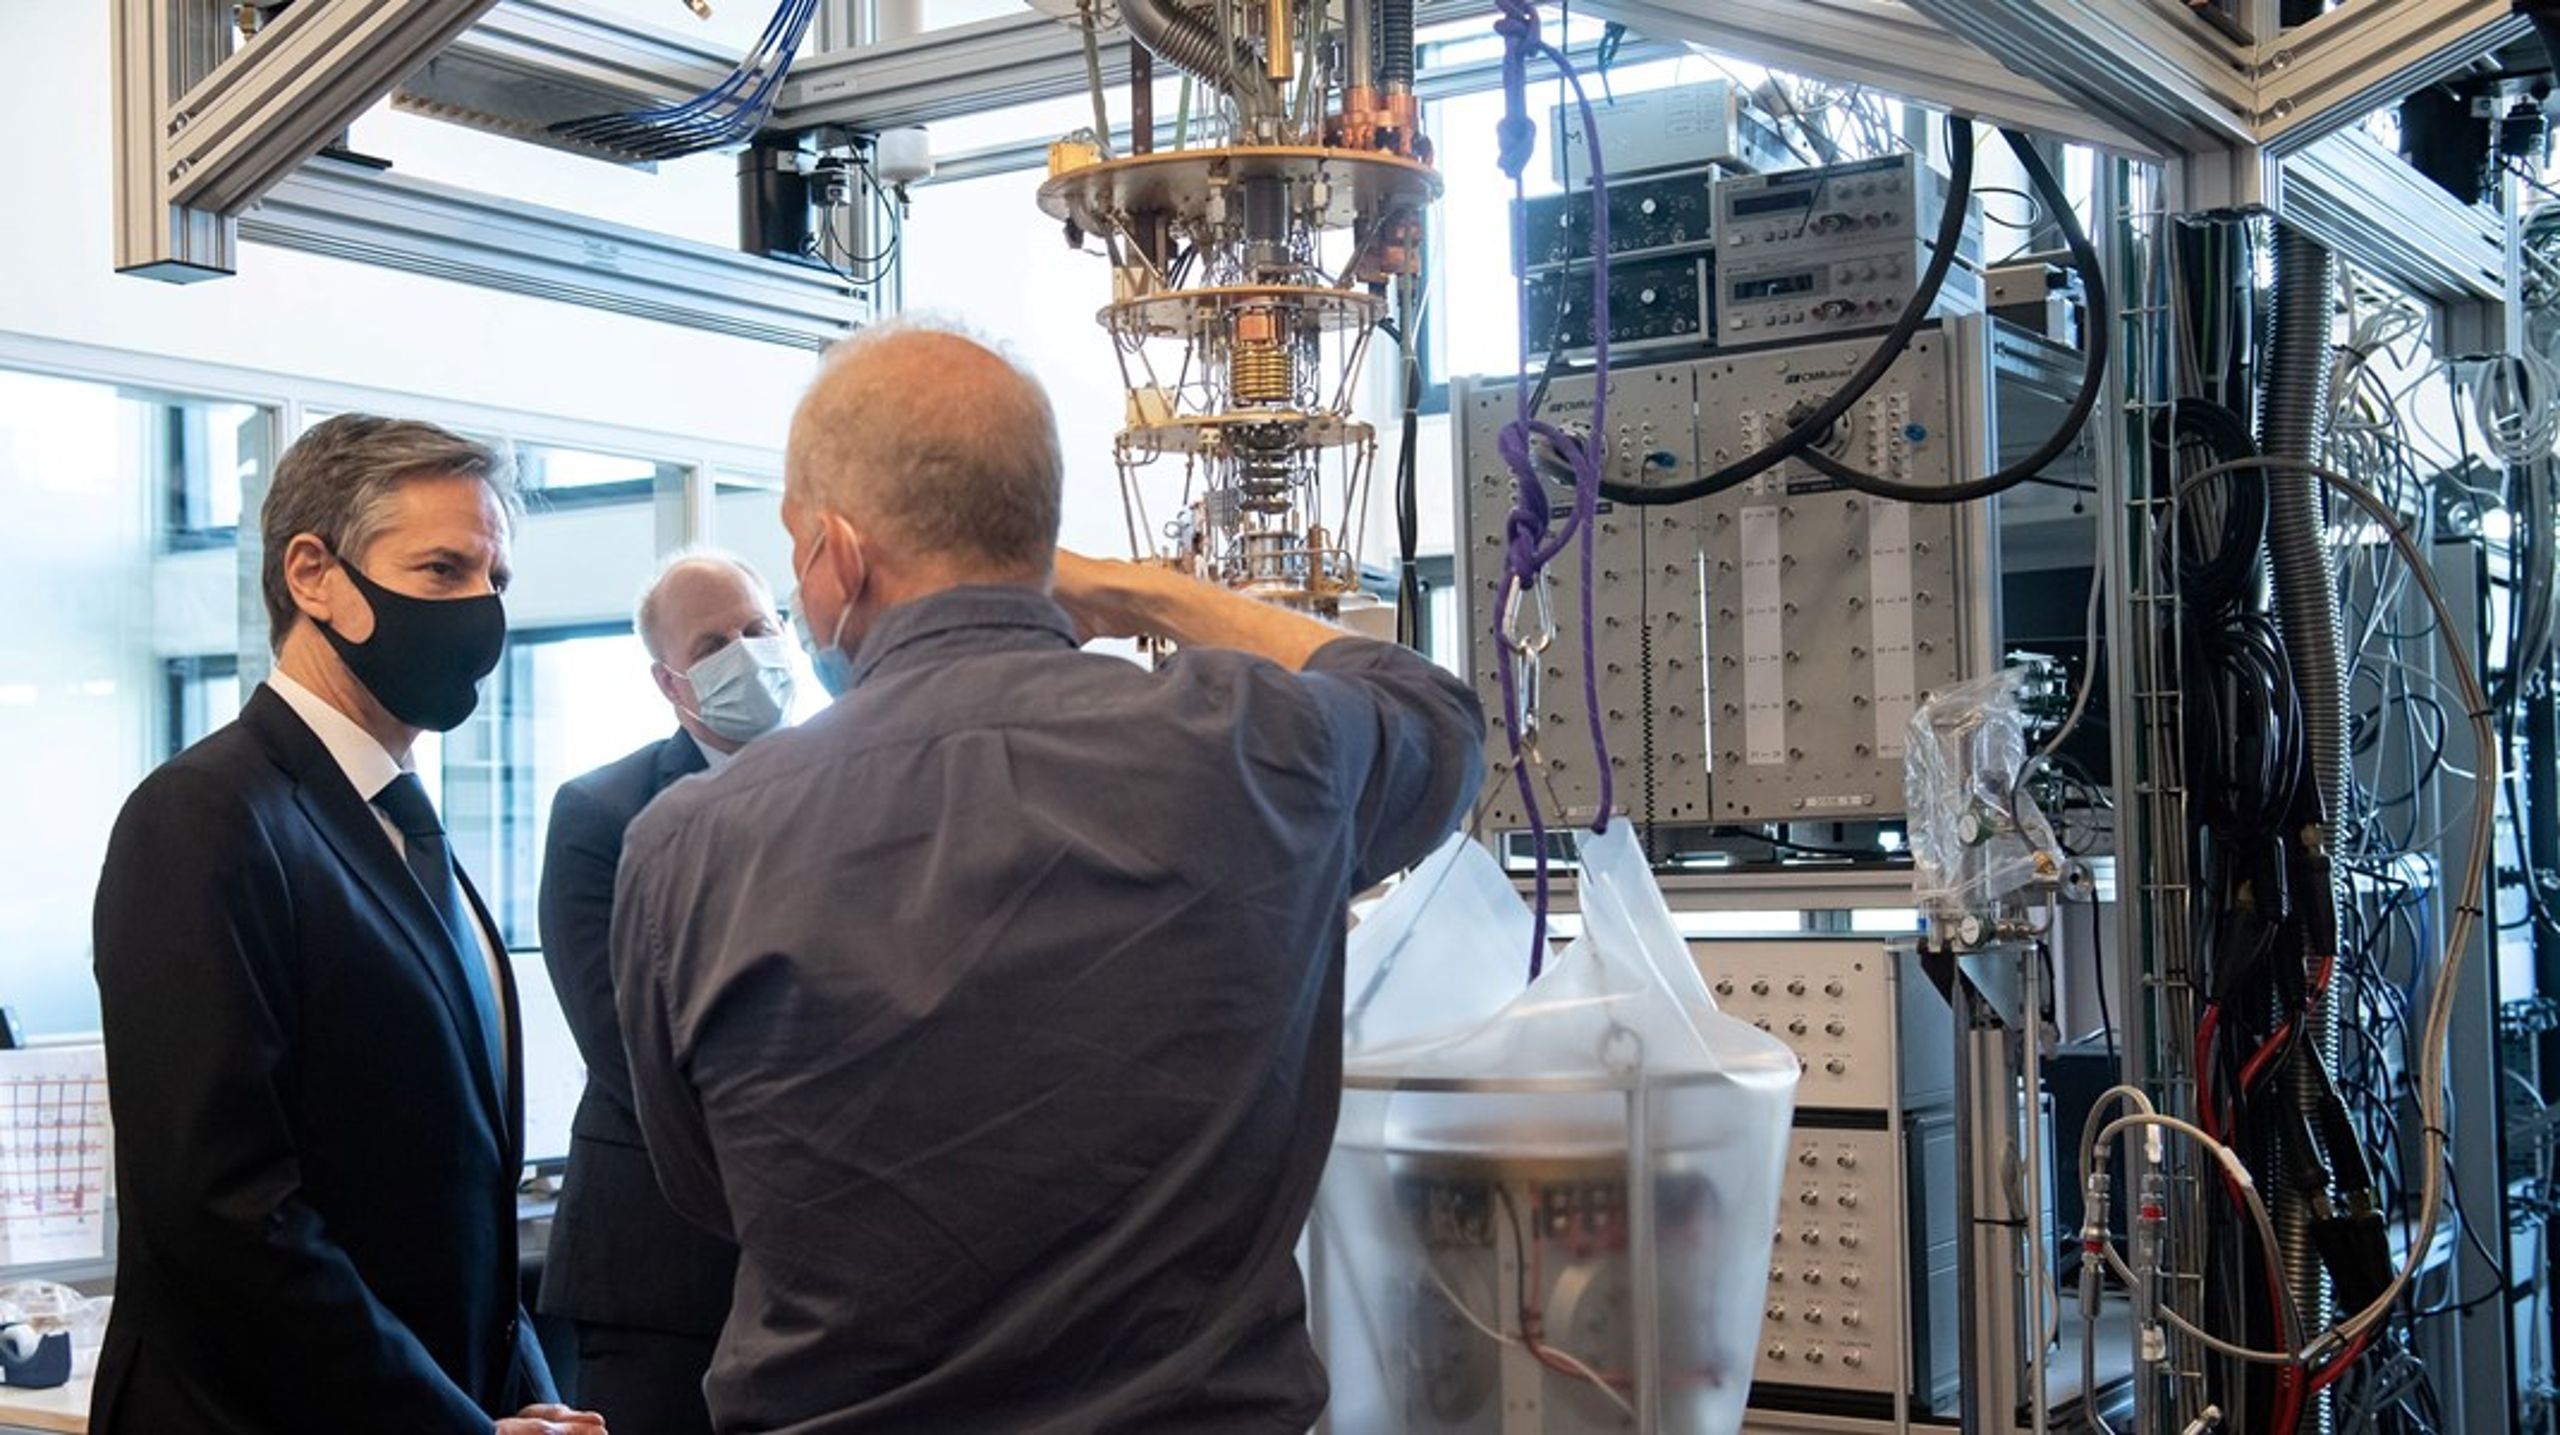 Særligt Niels Bohr Institutet på KU har udfordringer med informationssikkerheden, siger Rigsrevisionen i en ny rapport. Her besøger USA's udenrigsminister Anthony Blinken i 2021 instituttets forskere, der arbejder med kvantecomputere.<br>